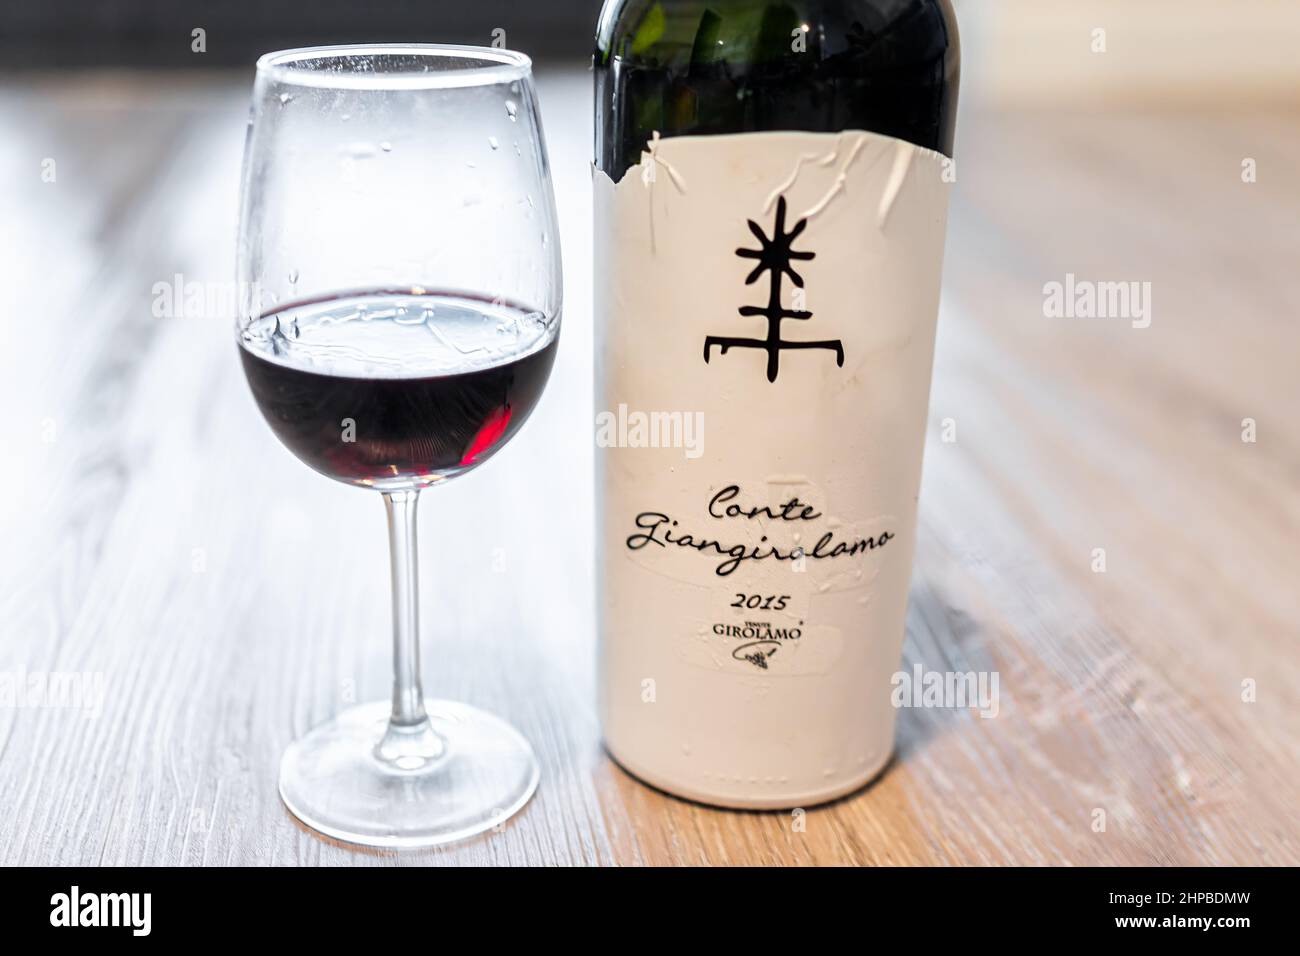 Napoli, Stati Uniti d'America - 10 agosto 2021: Bottiglia di vino rosso d'annata 2015 Italia di Conte Giangirolamo con etichetta cartacea sul tavolo Foto Stock